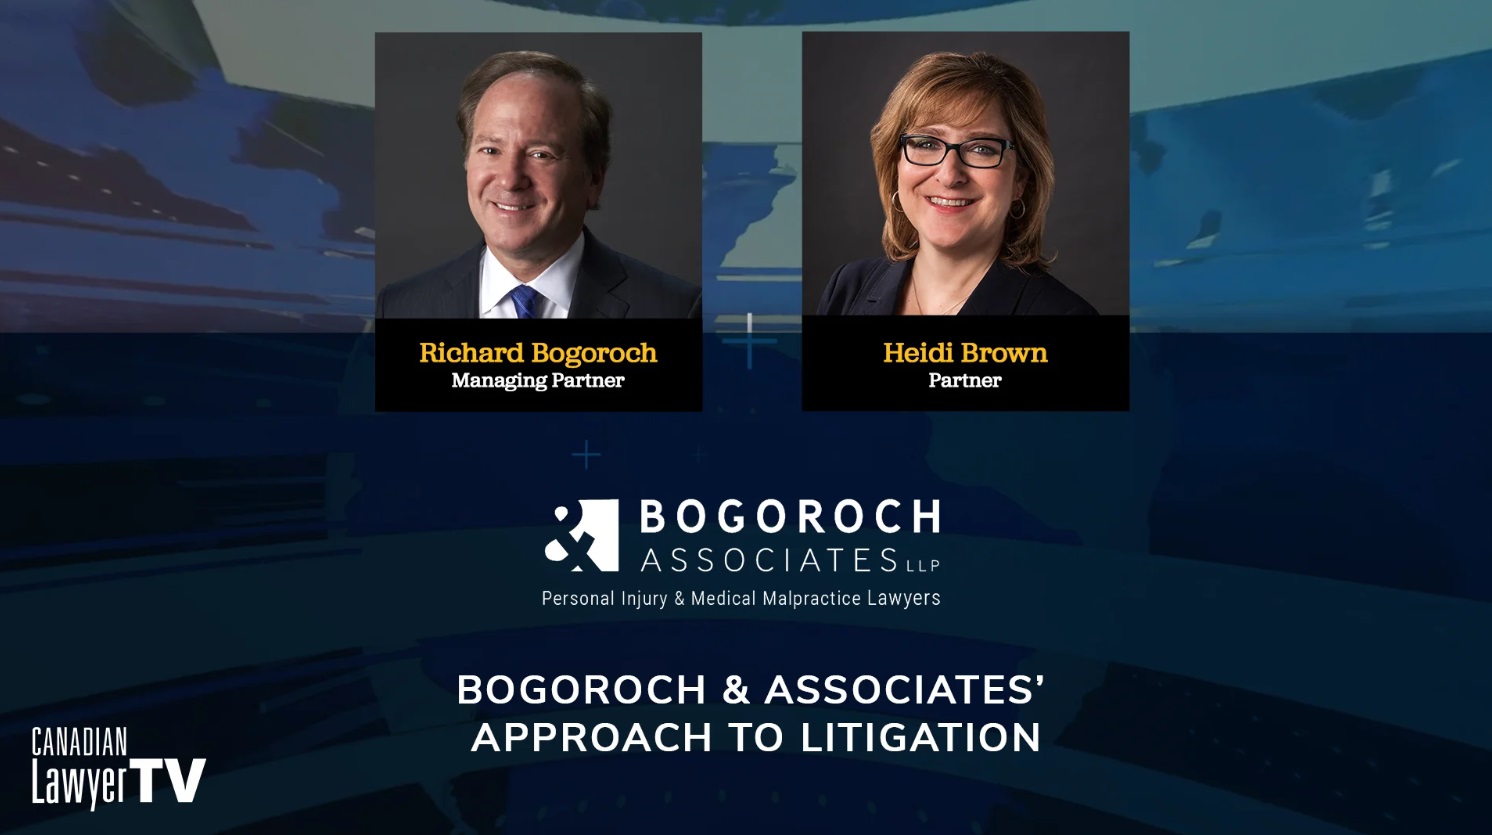 Richard Bogoroch and Heidi Brown of Bogoroch & Associates LLP choose their battles wisely